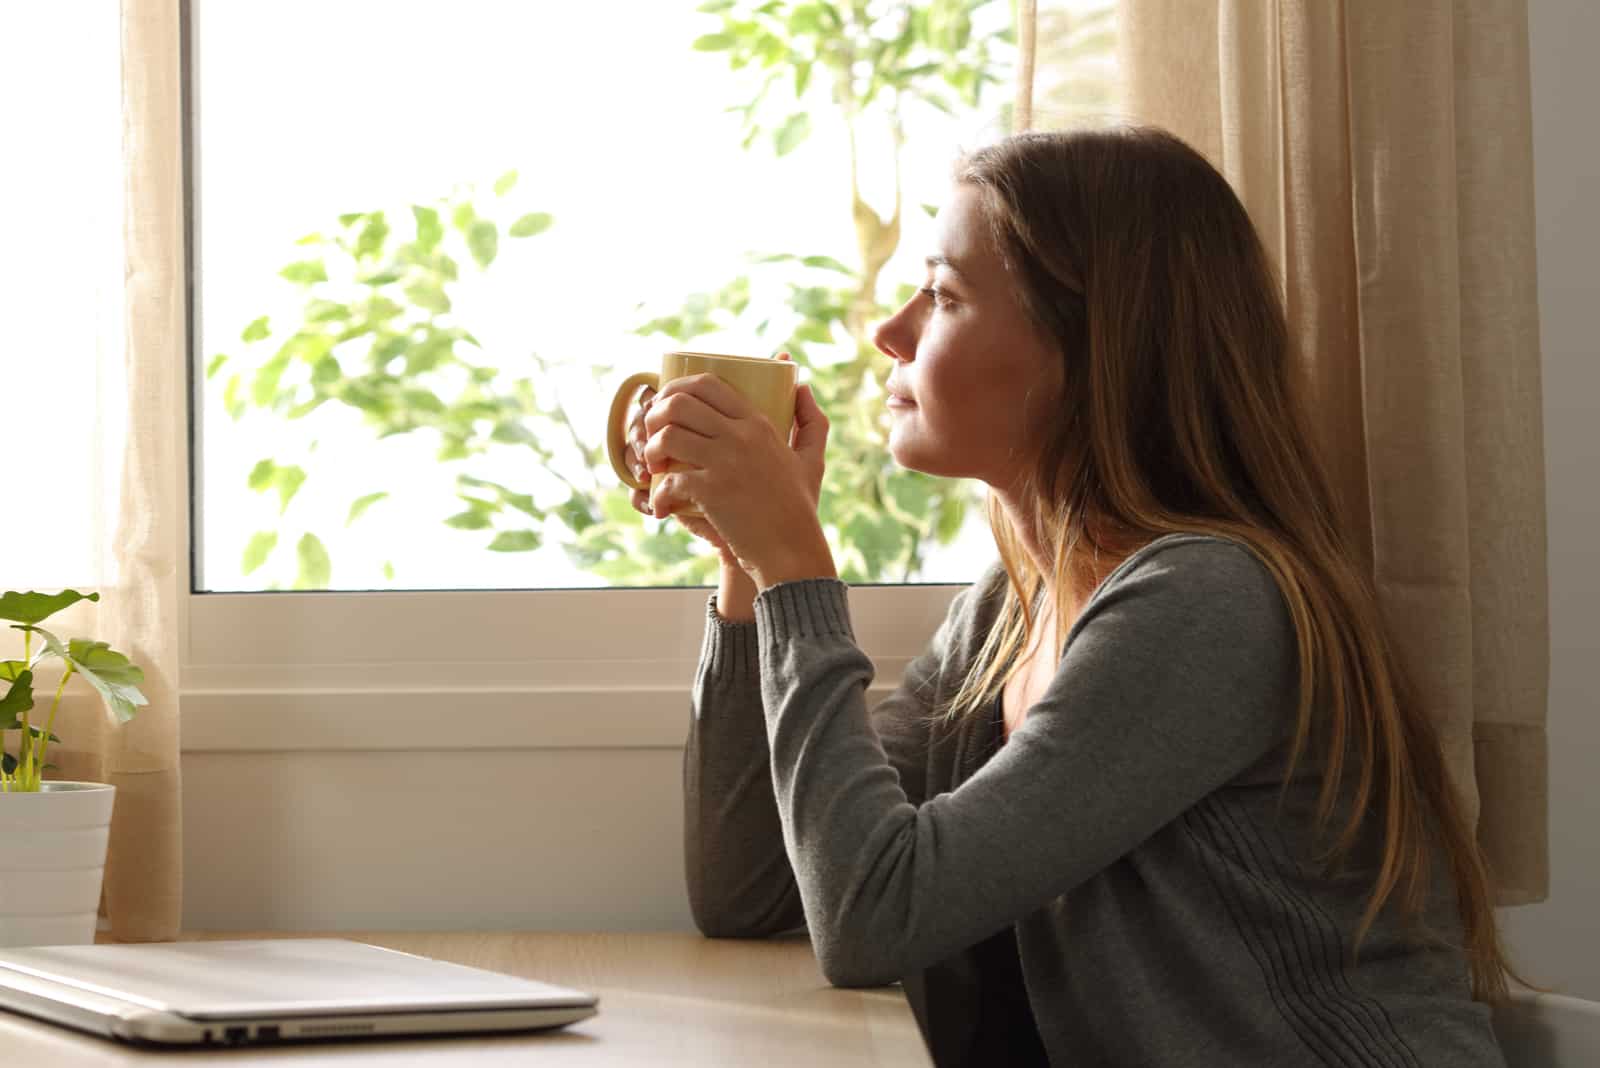 une femme imaginaire est assise à une table et boit du café